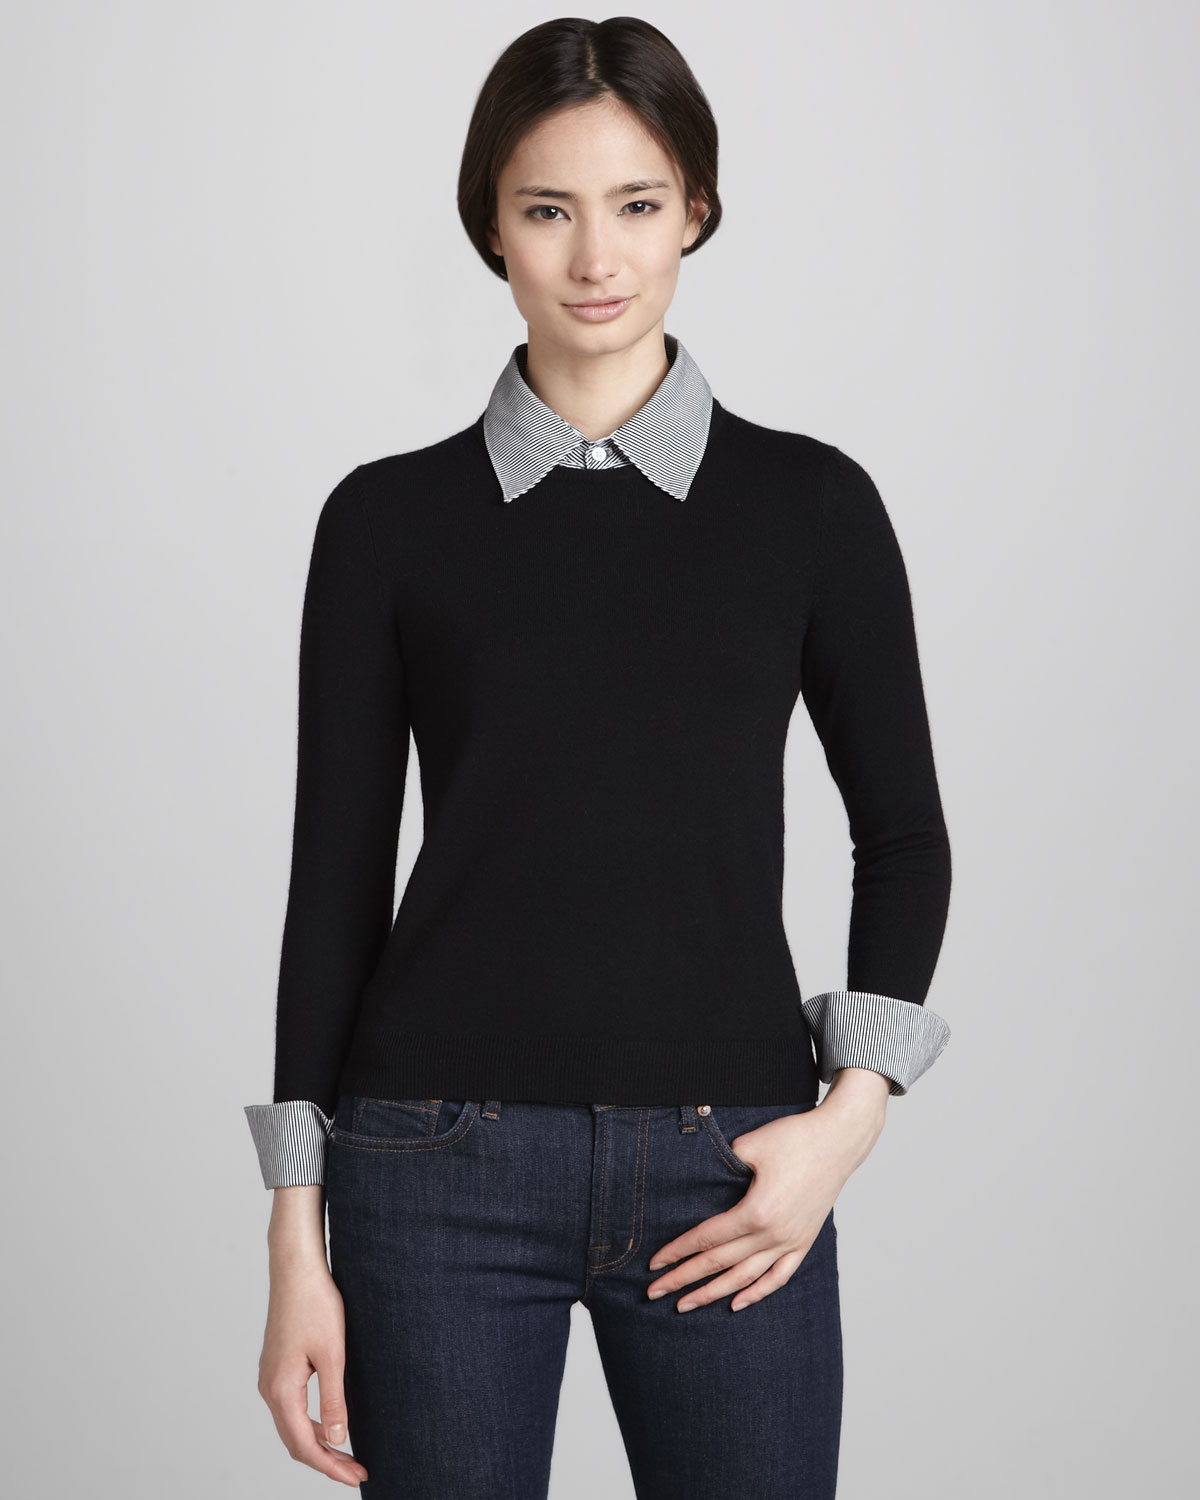 black collar sweater2019 black collar sweater for women